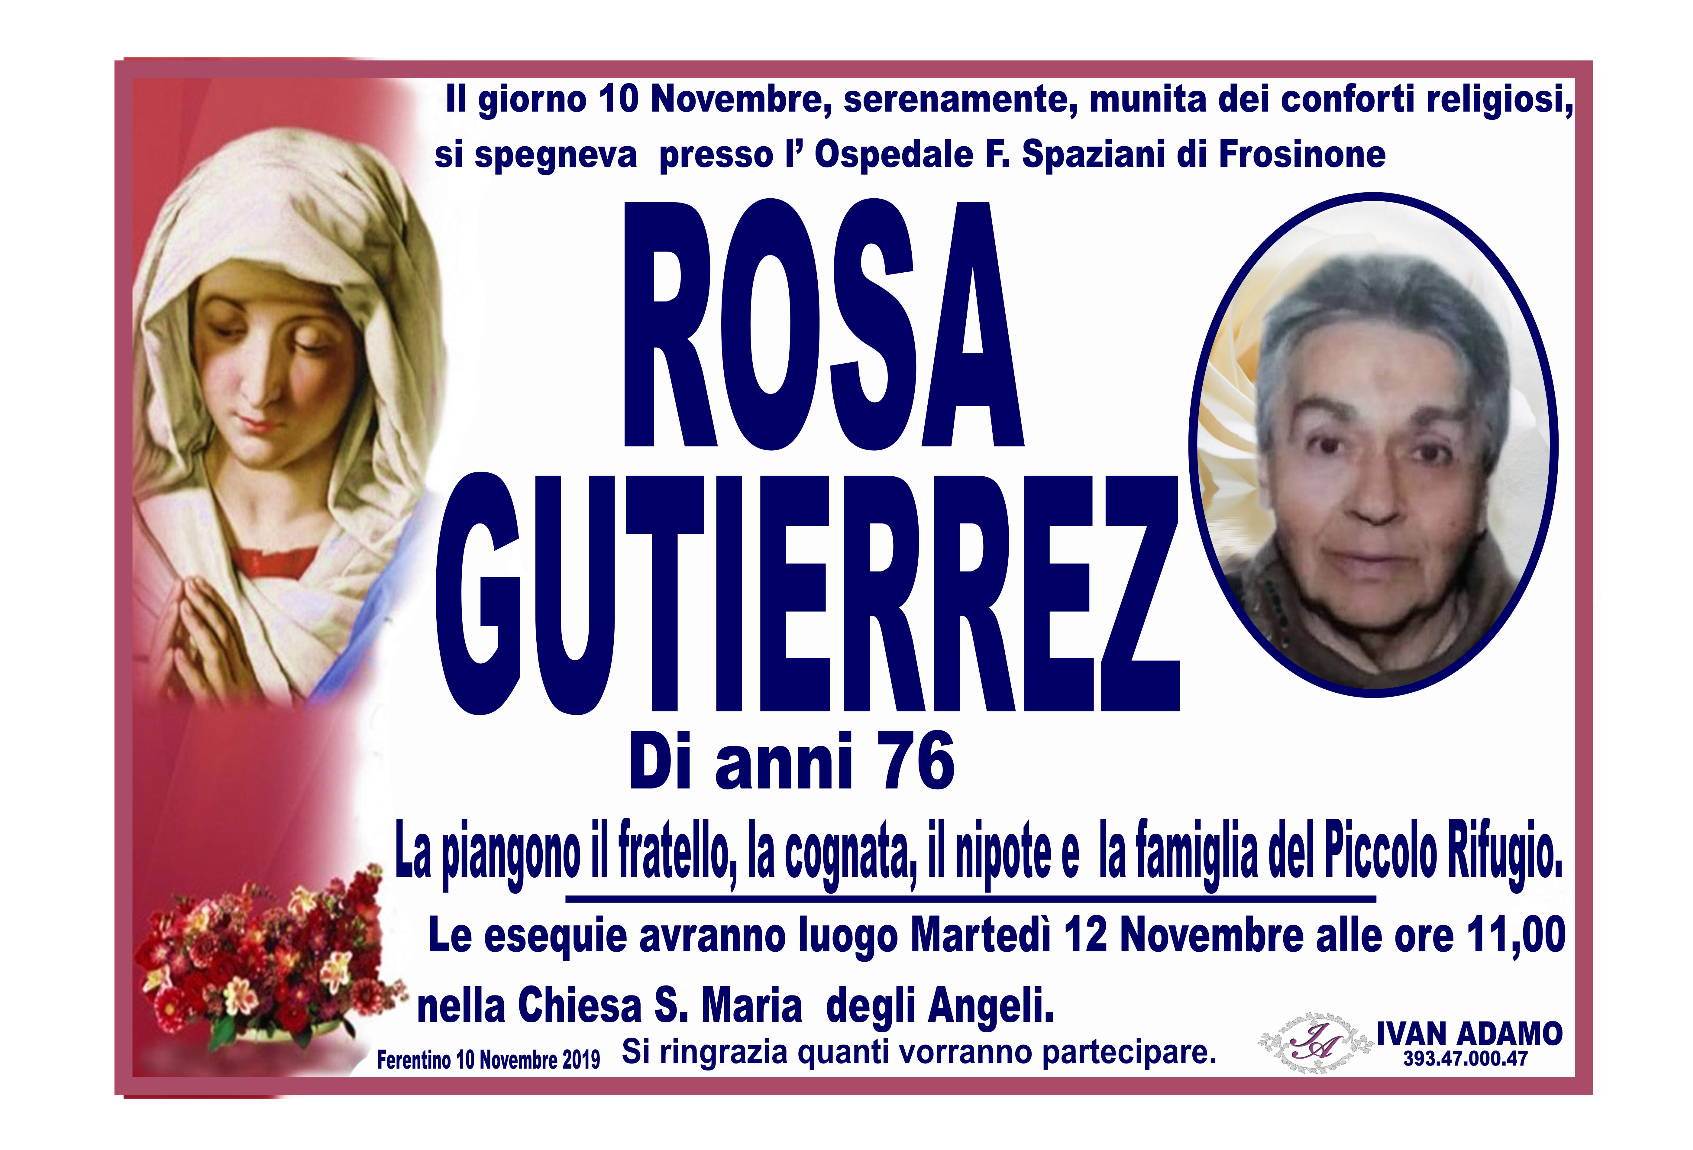 Rosa Gutierrez